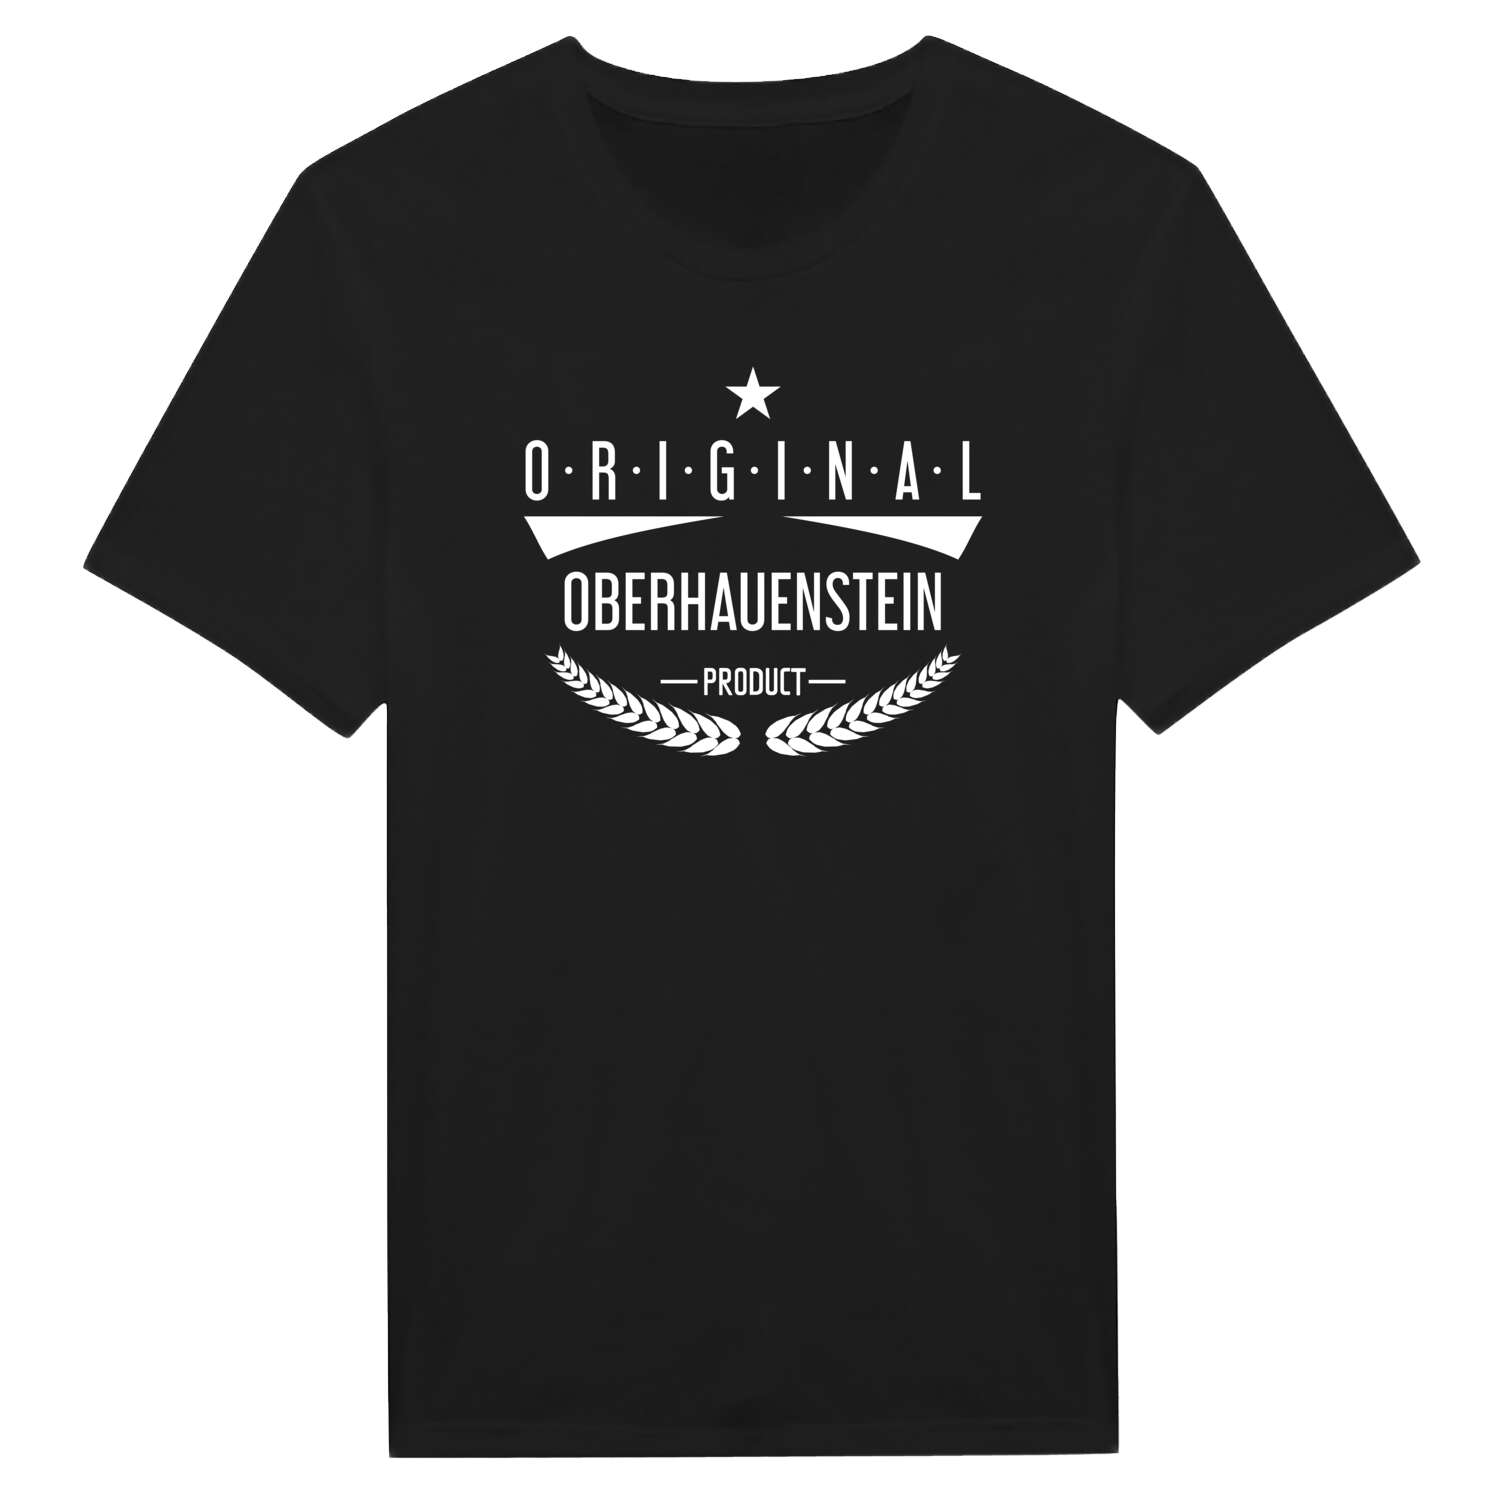 Oberhauenstein T-Shirt »Original Product«